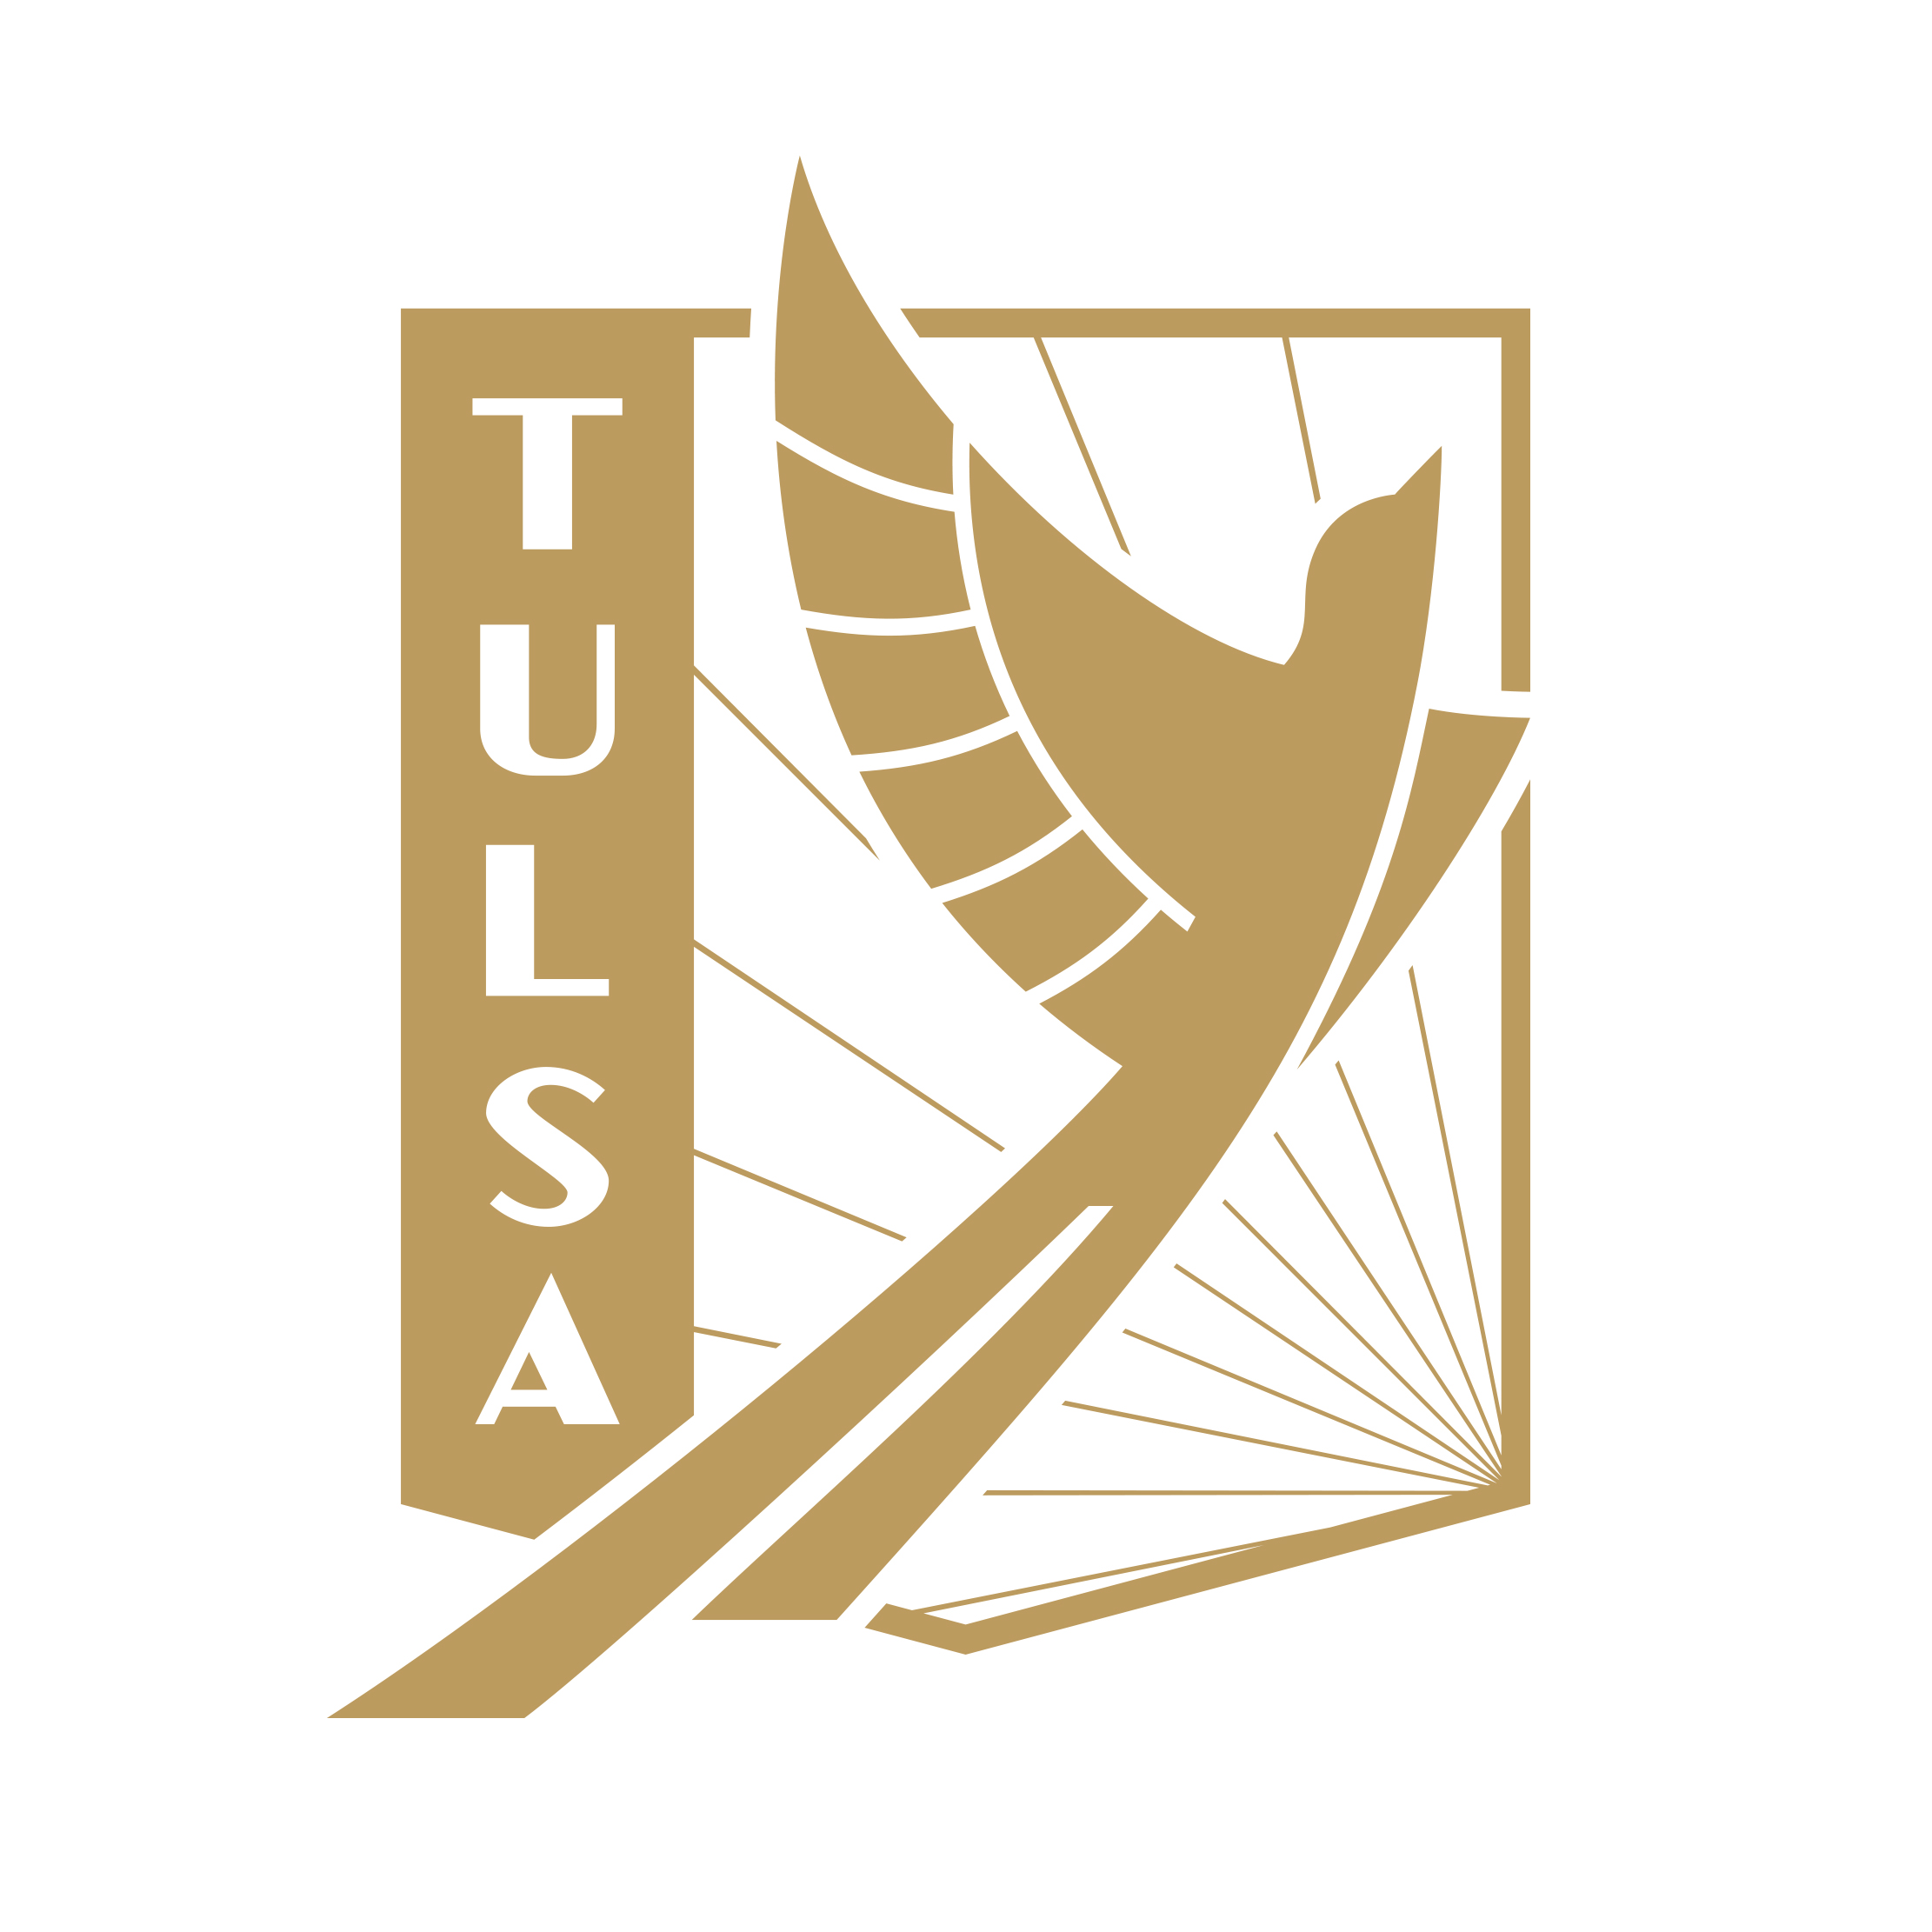 FC Tusla crest design by Matthew Wolff